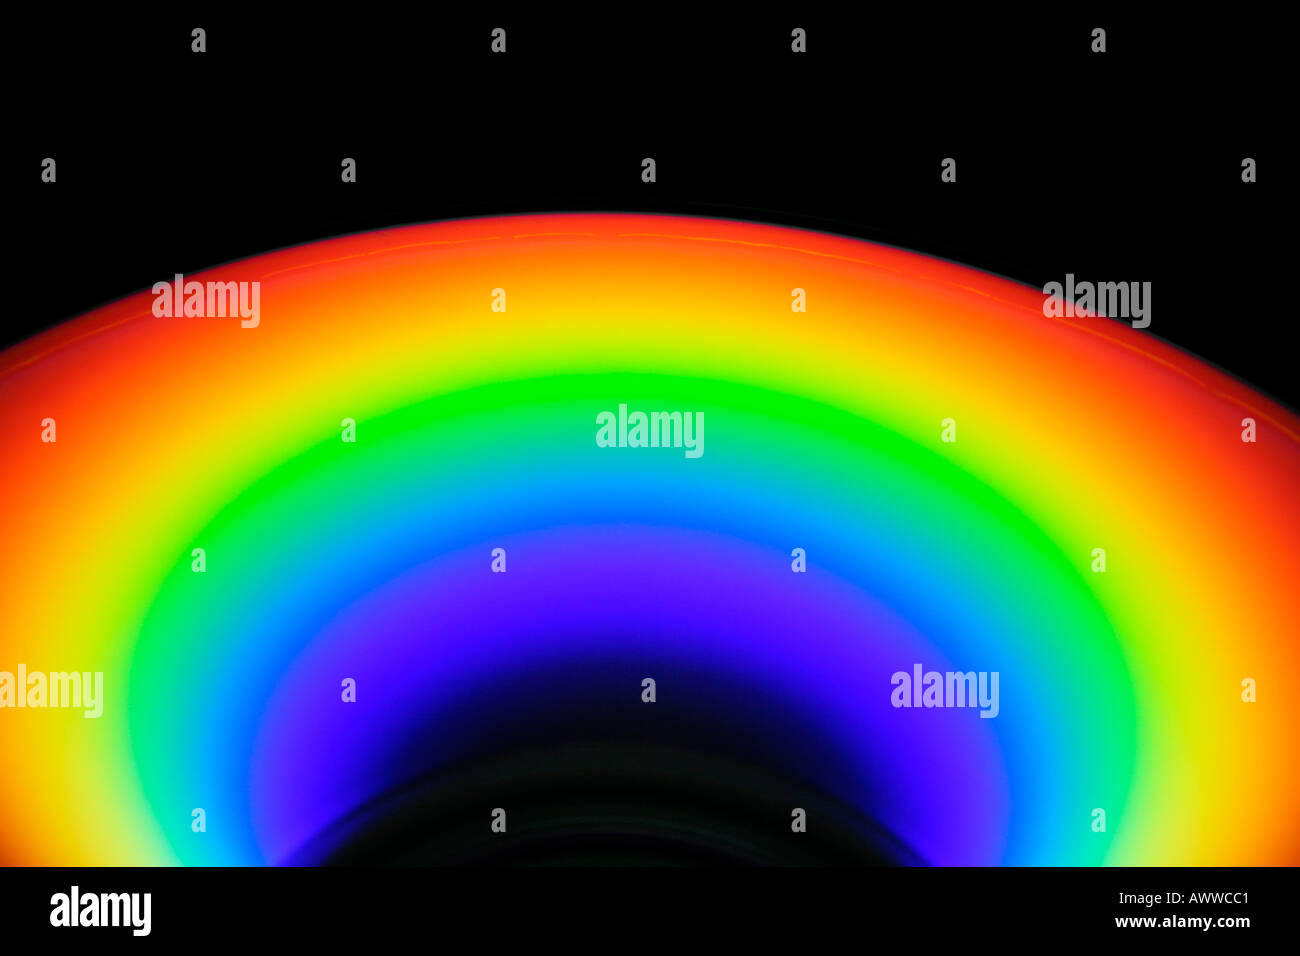 De couleur arc-en-ciel la réflexion sur la surface du disque compact est causée par la diffraction de la lumière sur le bord extérieur de discussion Banque D'Images